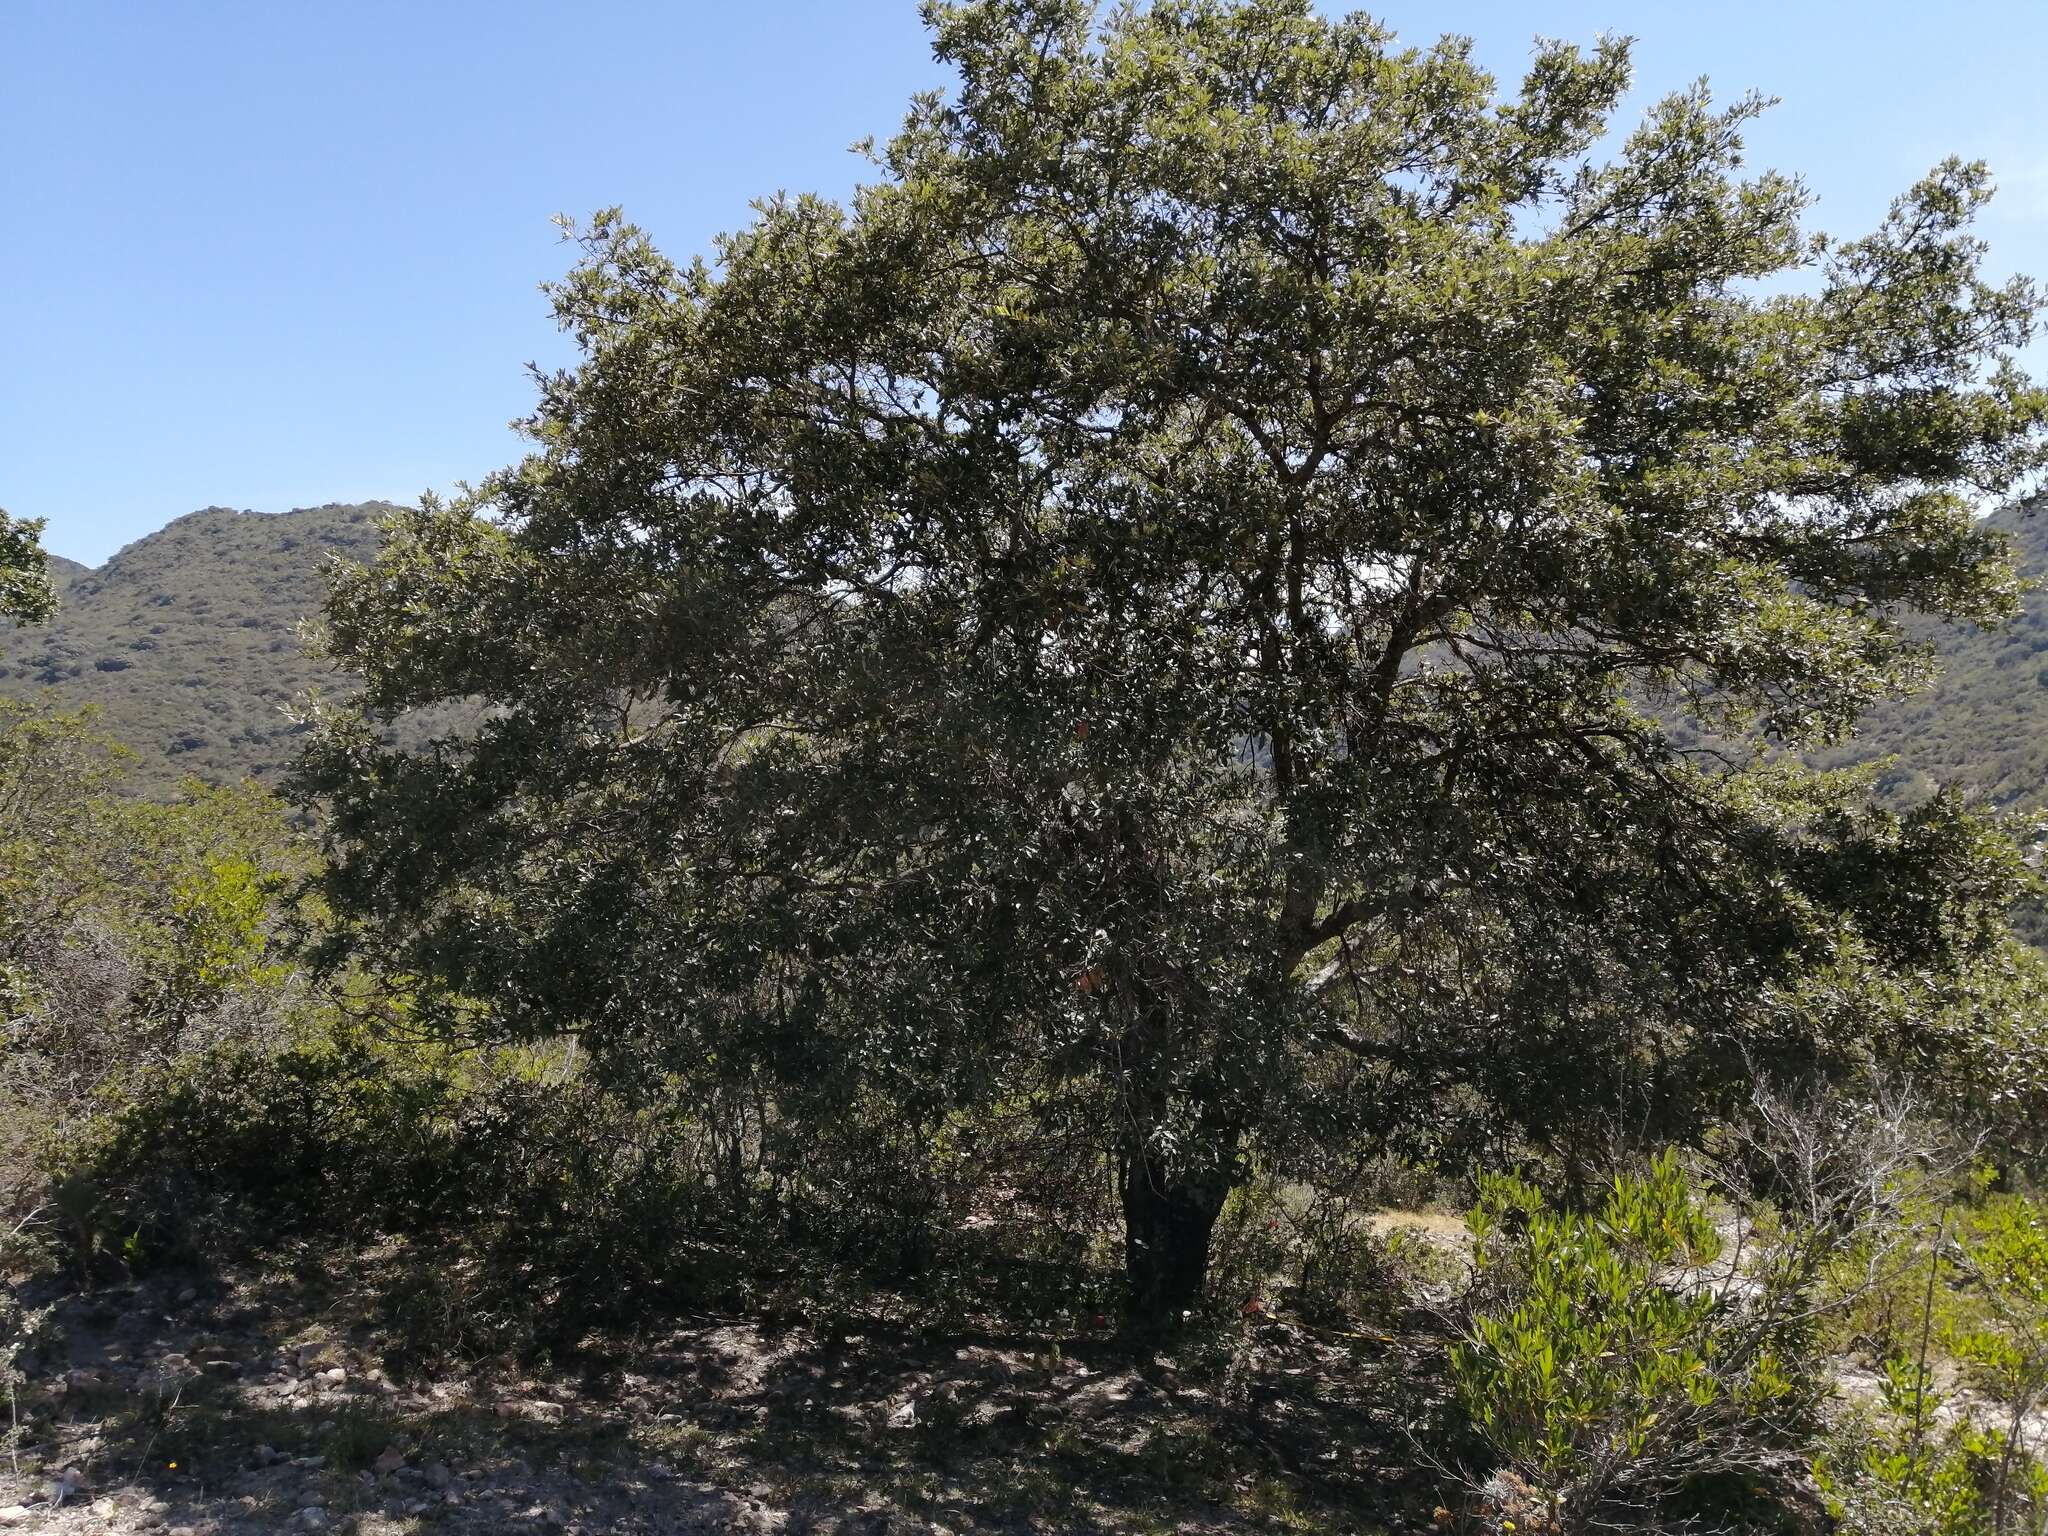 Image of Quercus mexicana Bonpl.